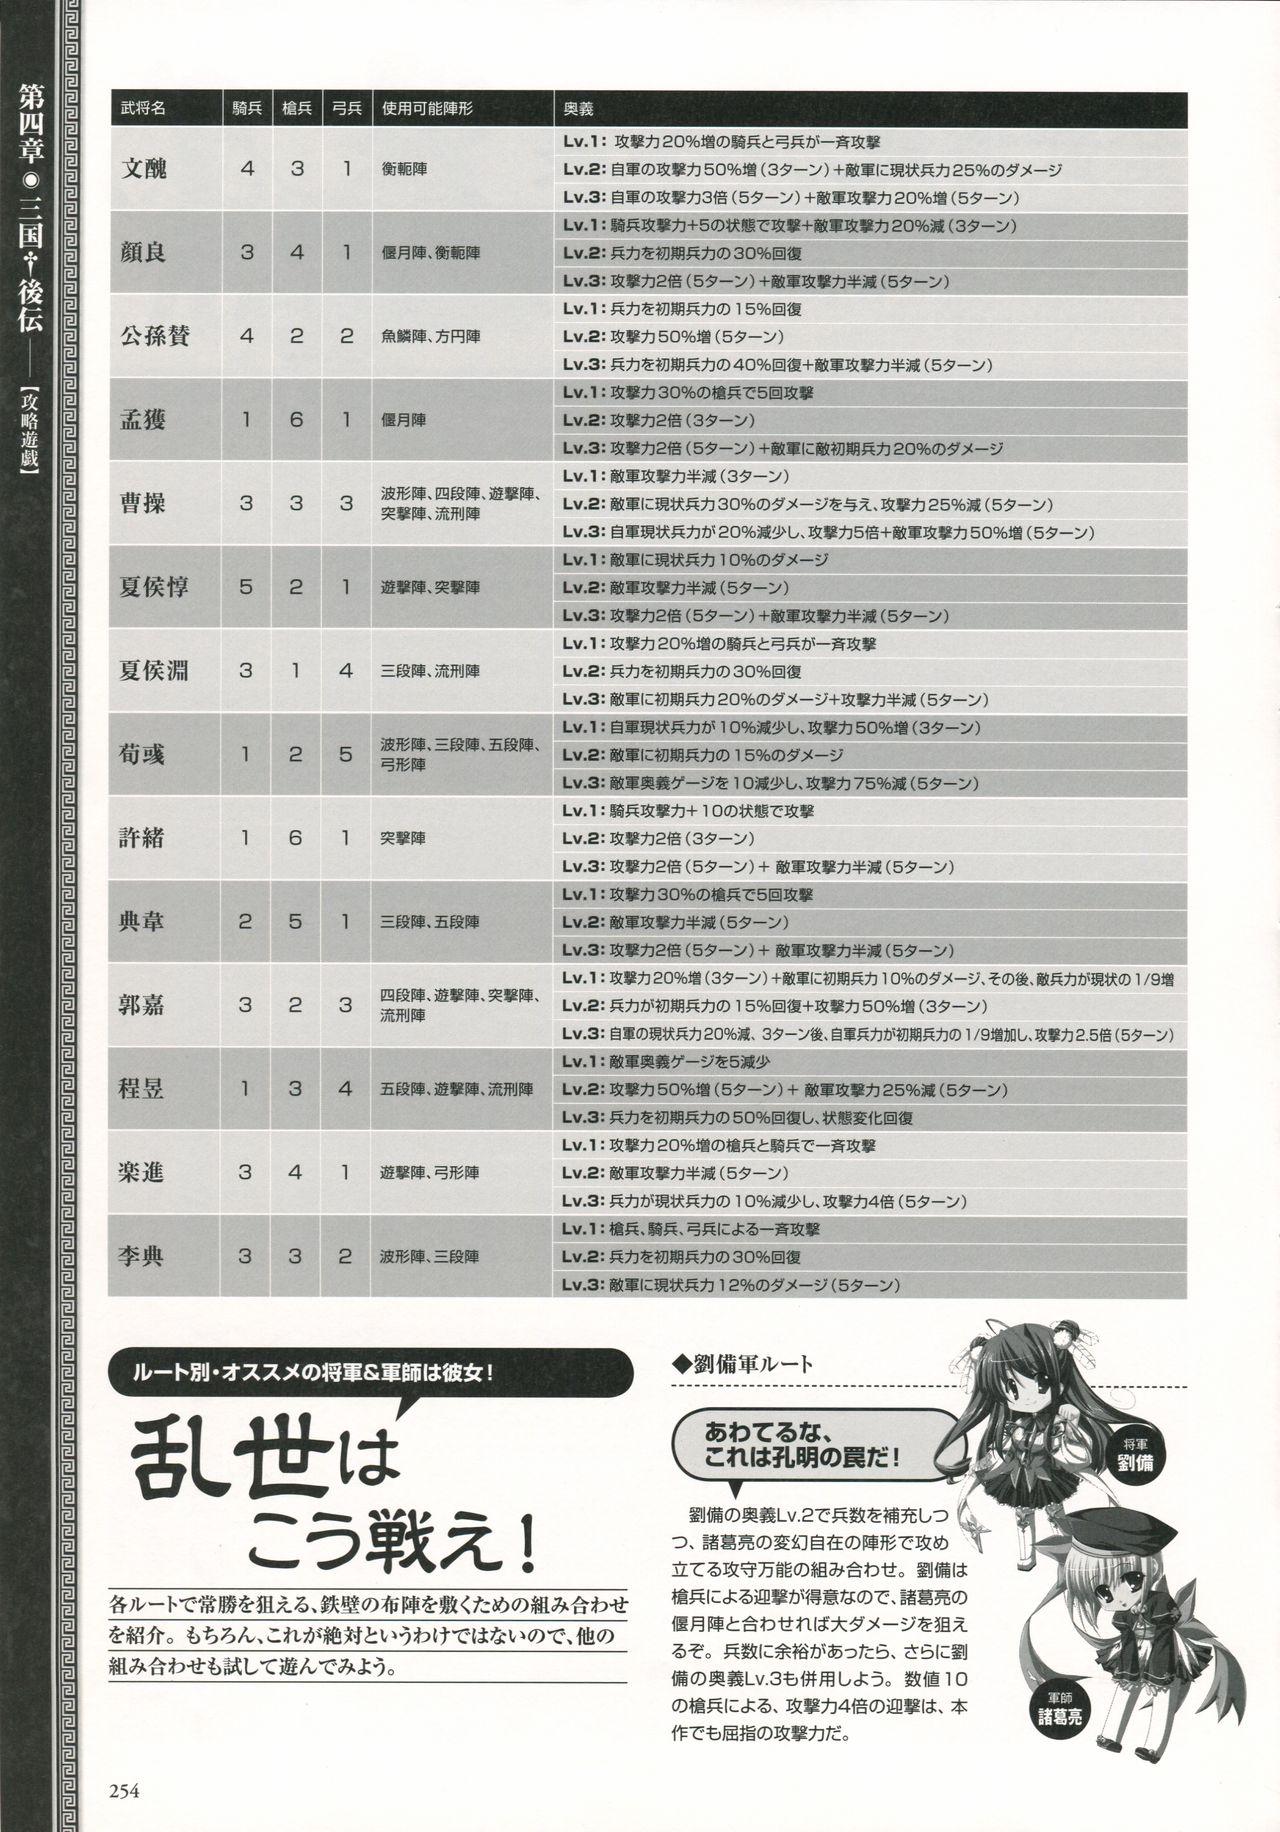 真・恋姫 無双―乙女繚乱☆三国志演義―パーフェクトビジュアルブック 256